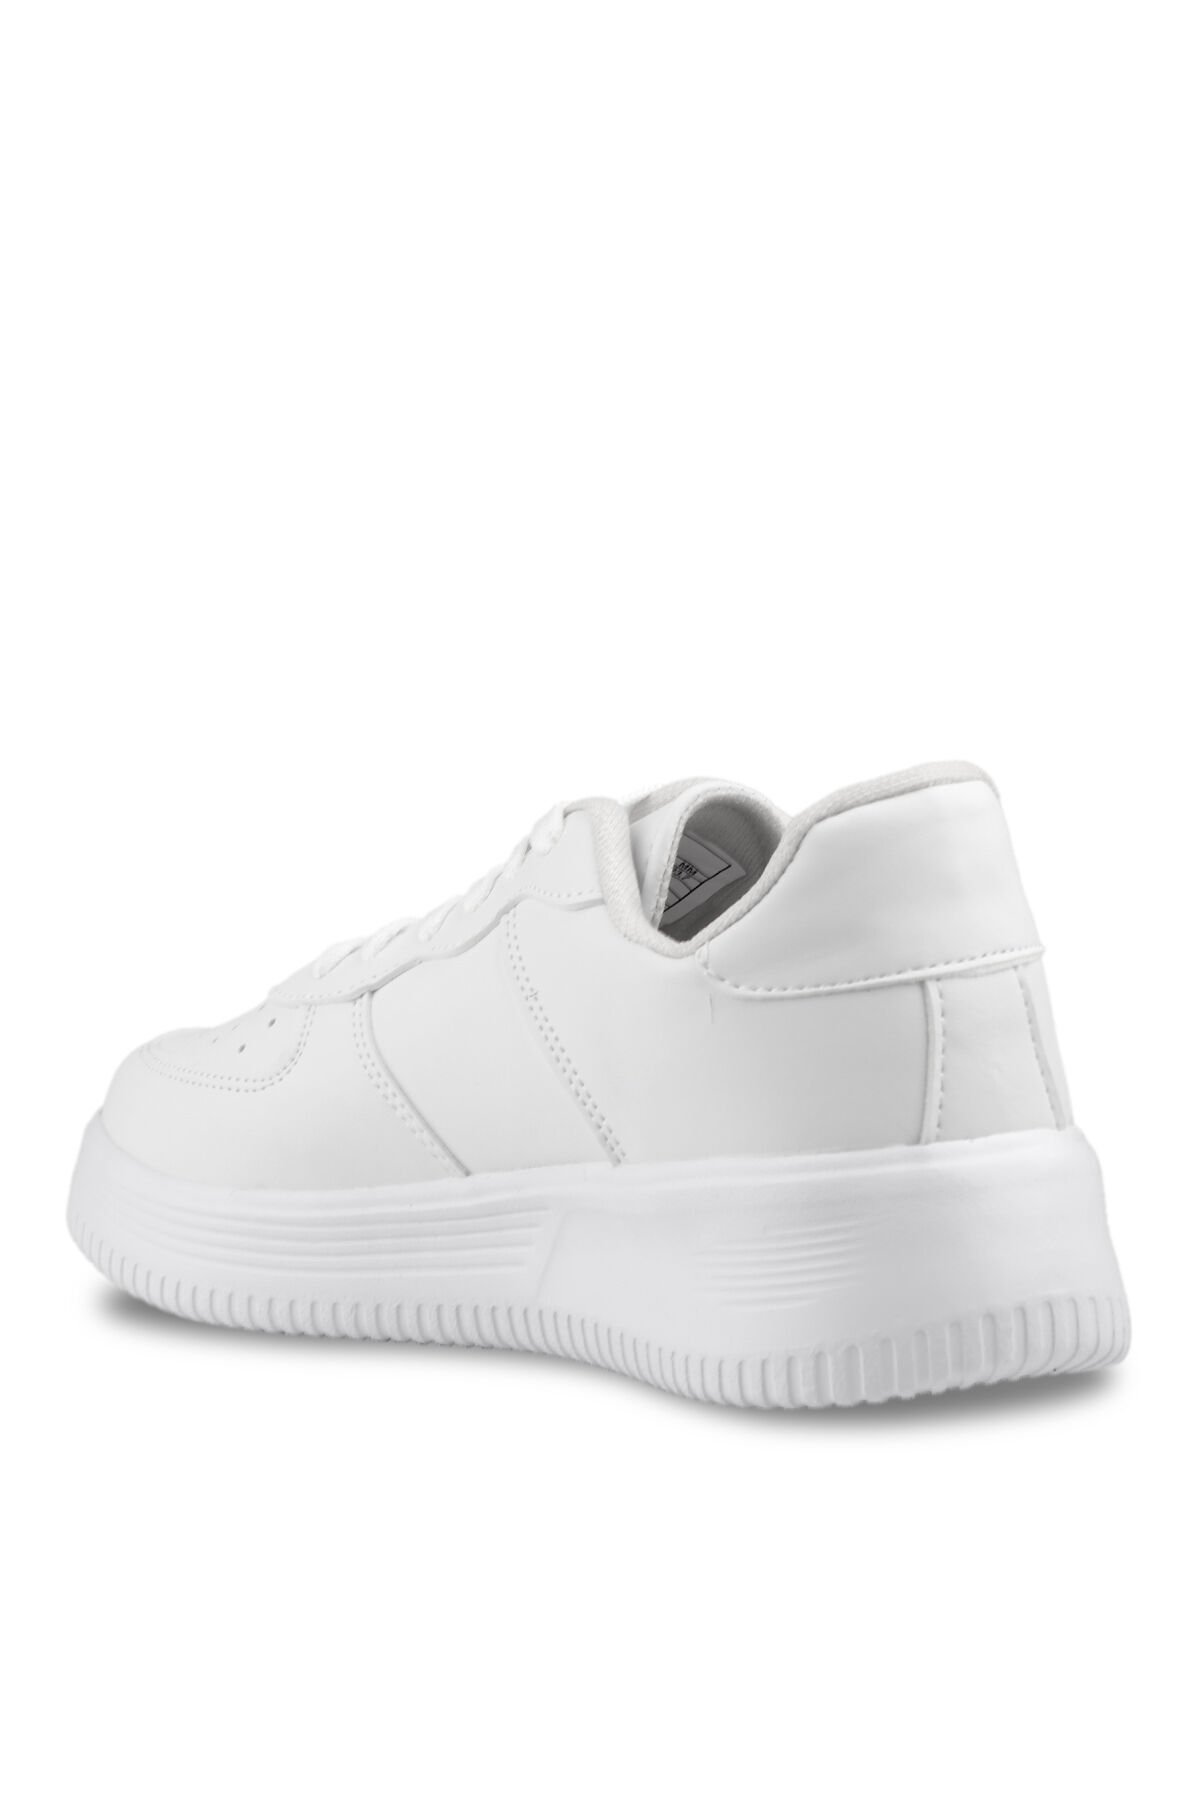 Slazenger EKUA Sneaker Kadın Ayakkabı Beyaz - Thumbnail